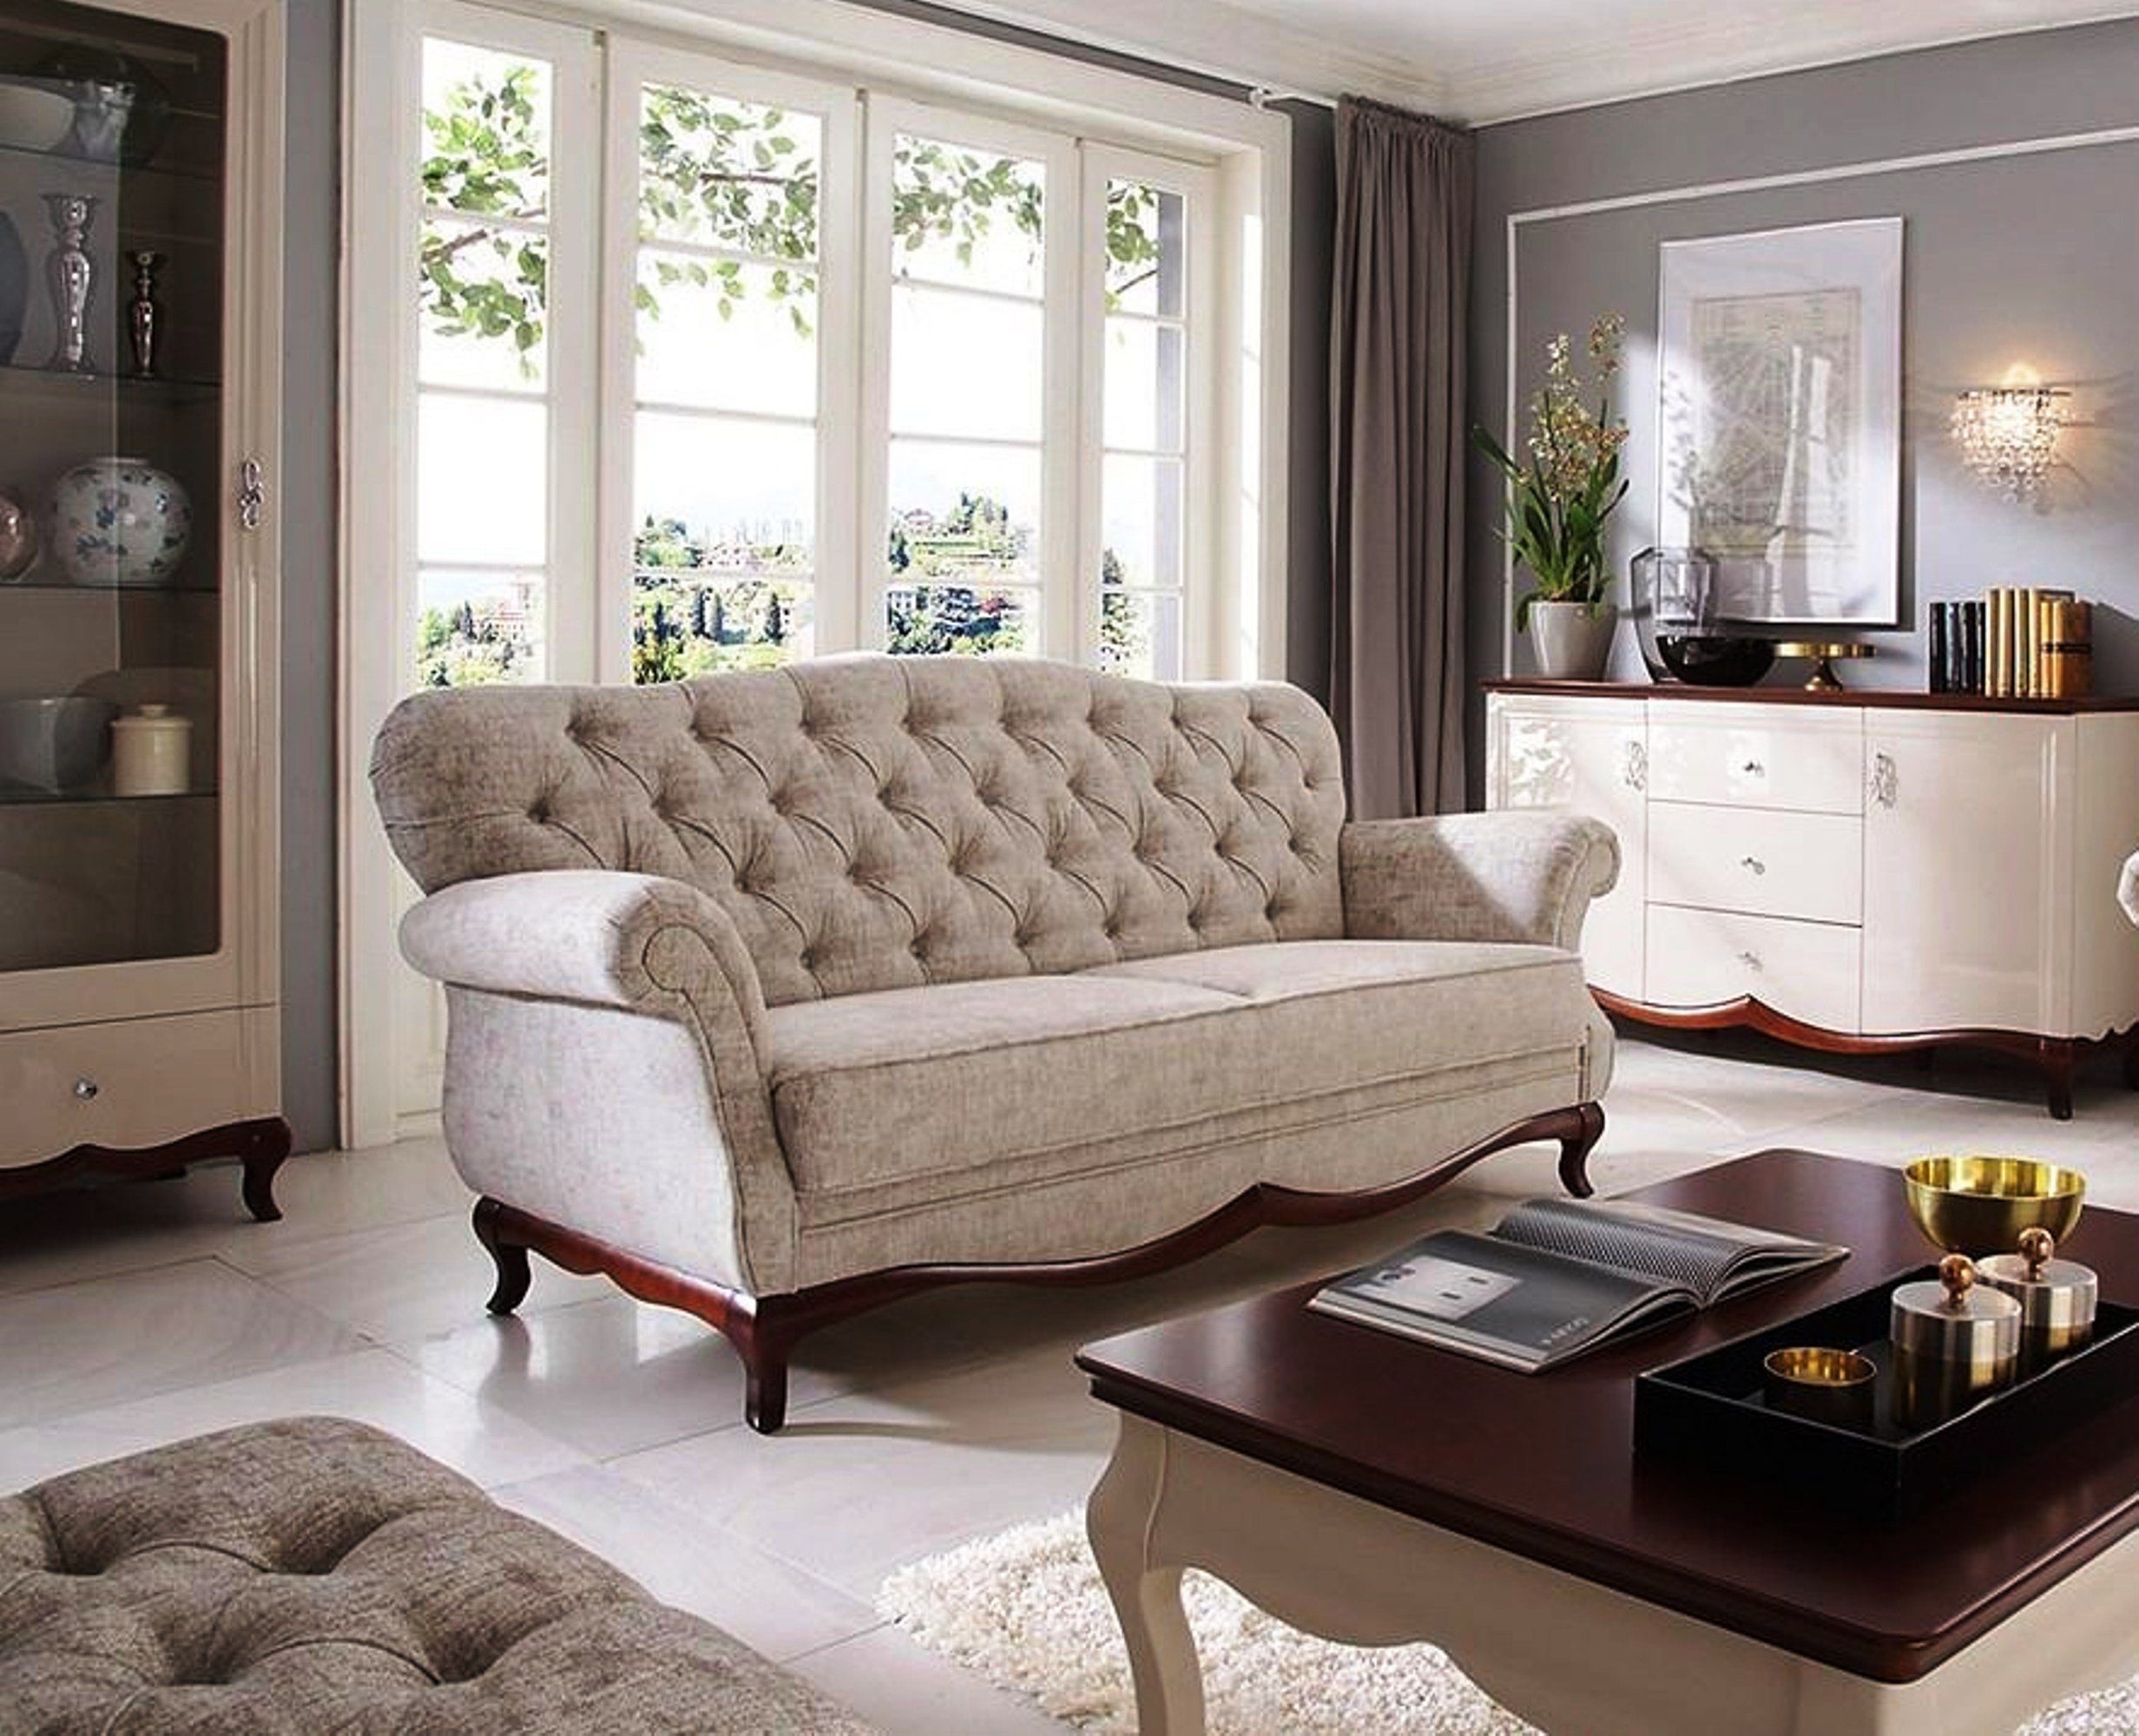 JVmoebel Sofa Luxus Beiger Moderner Zweisitzer stilvolle Möbel Polster Neu, Made in Europe